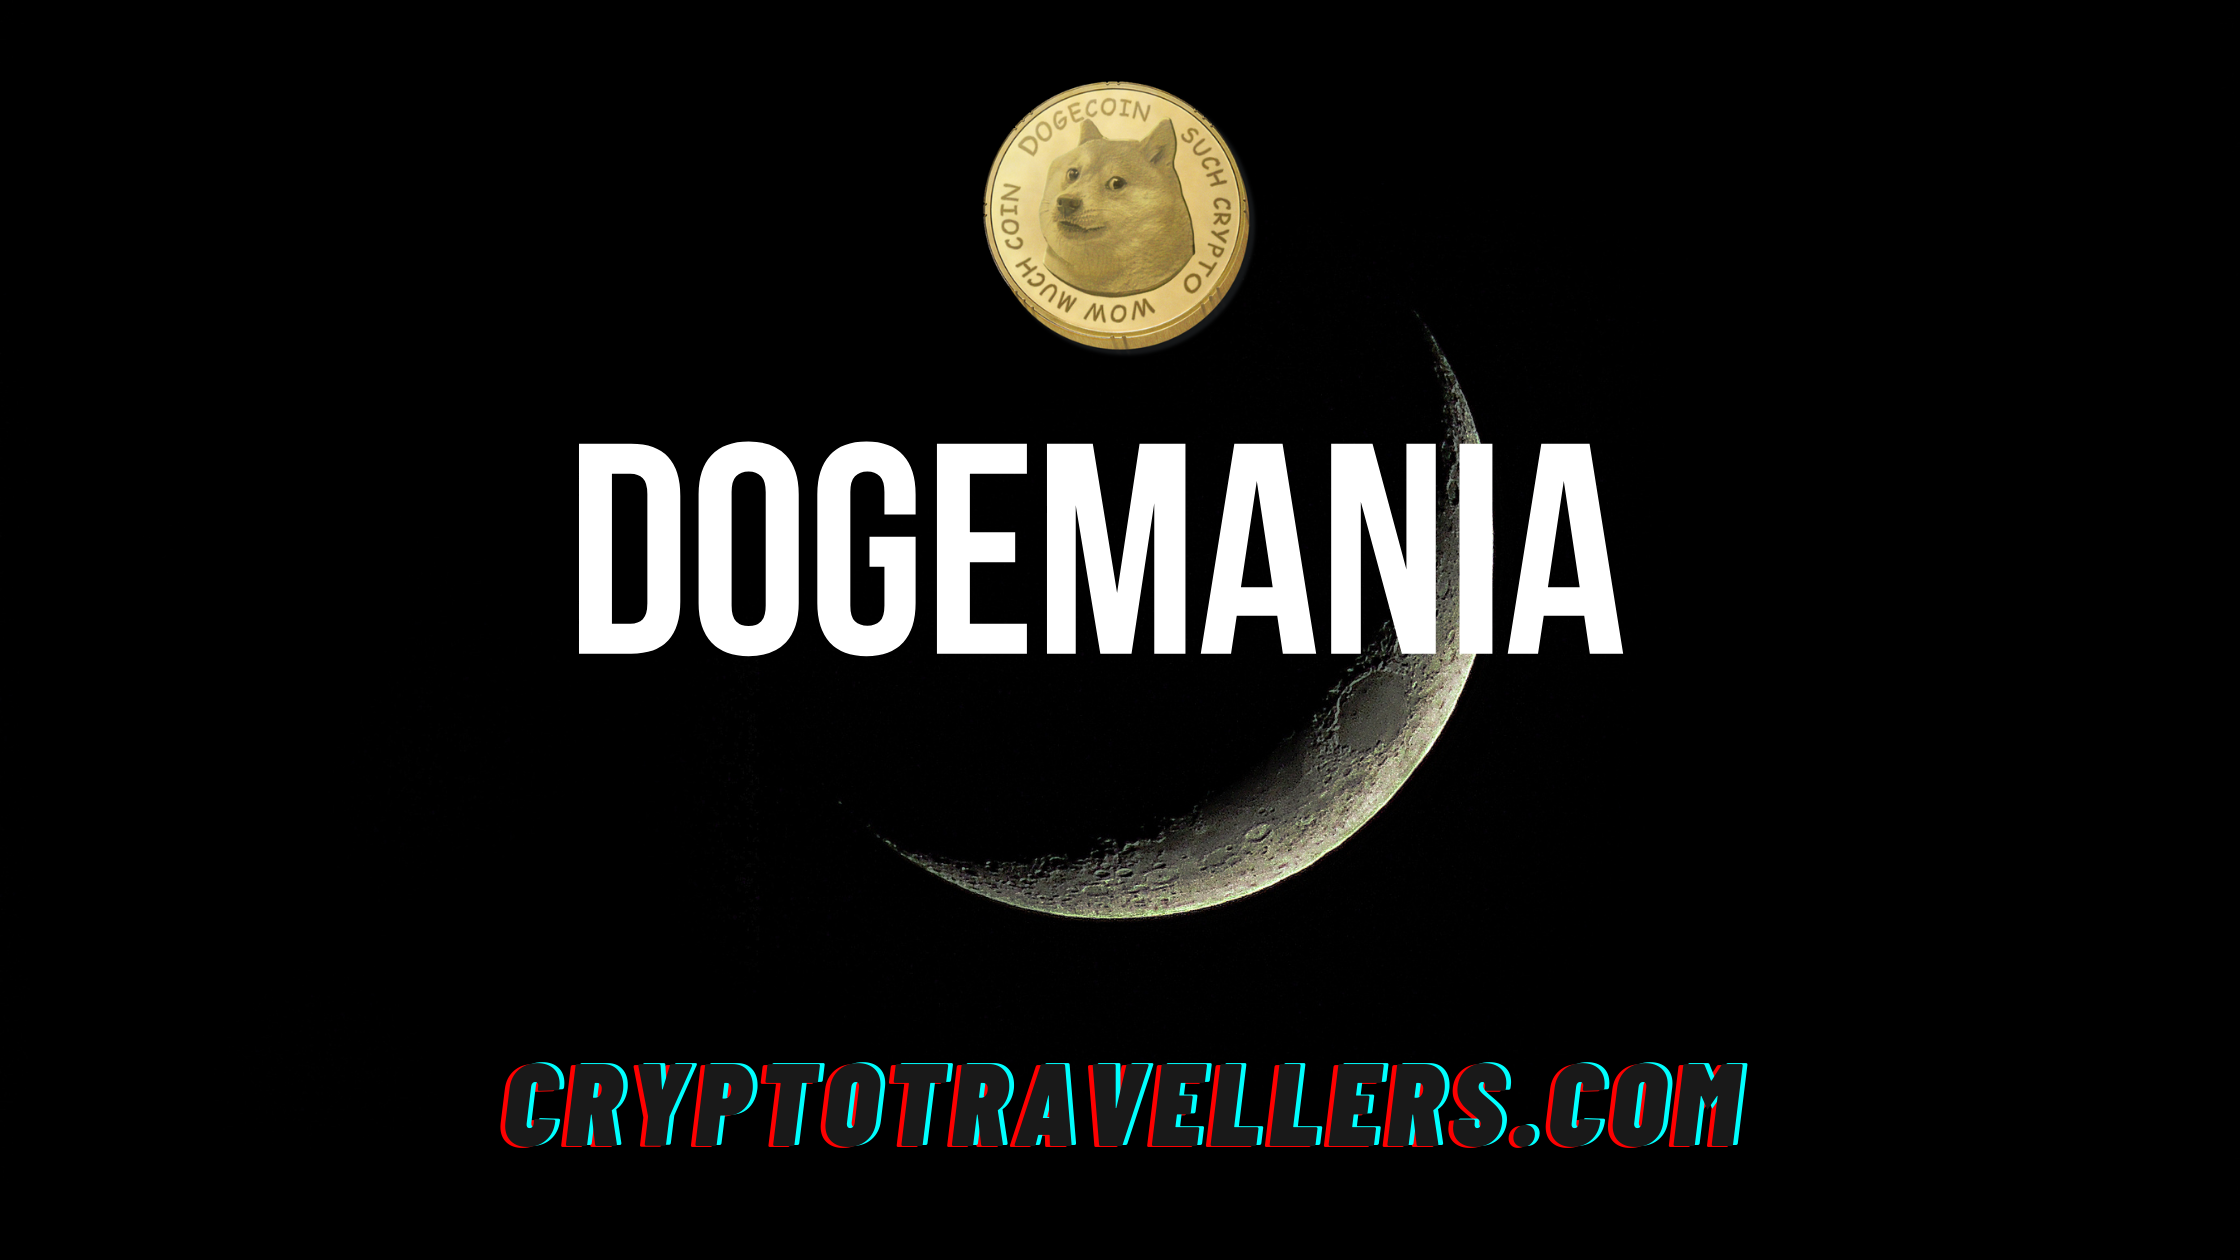 Dogemania - How long will it last?